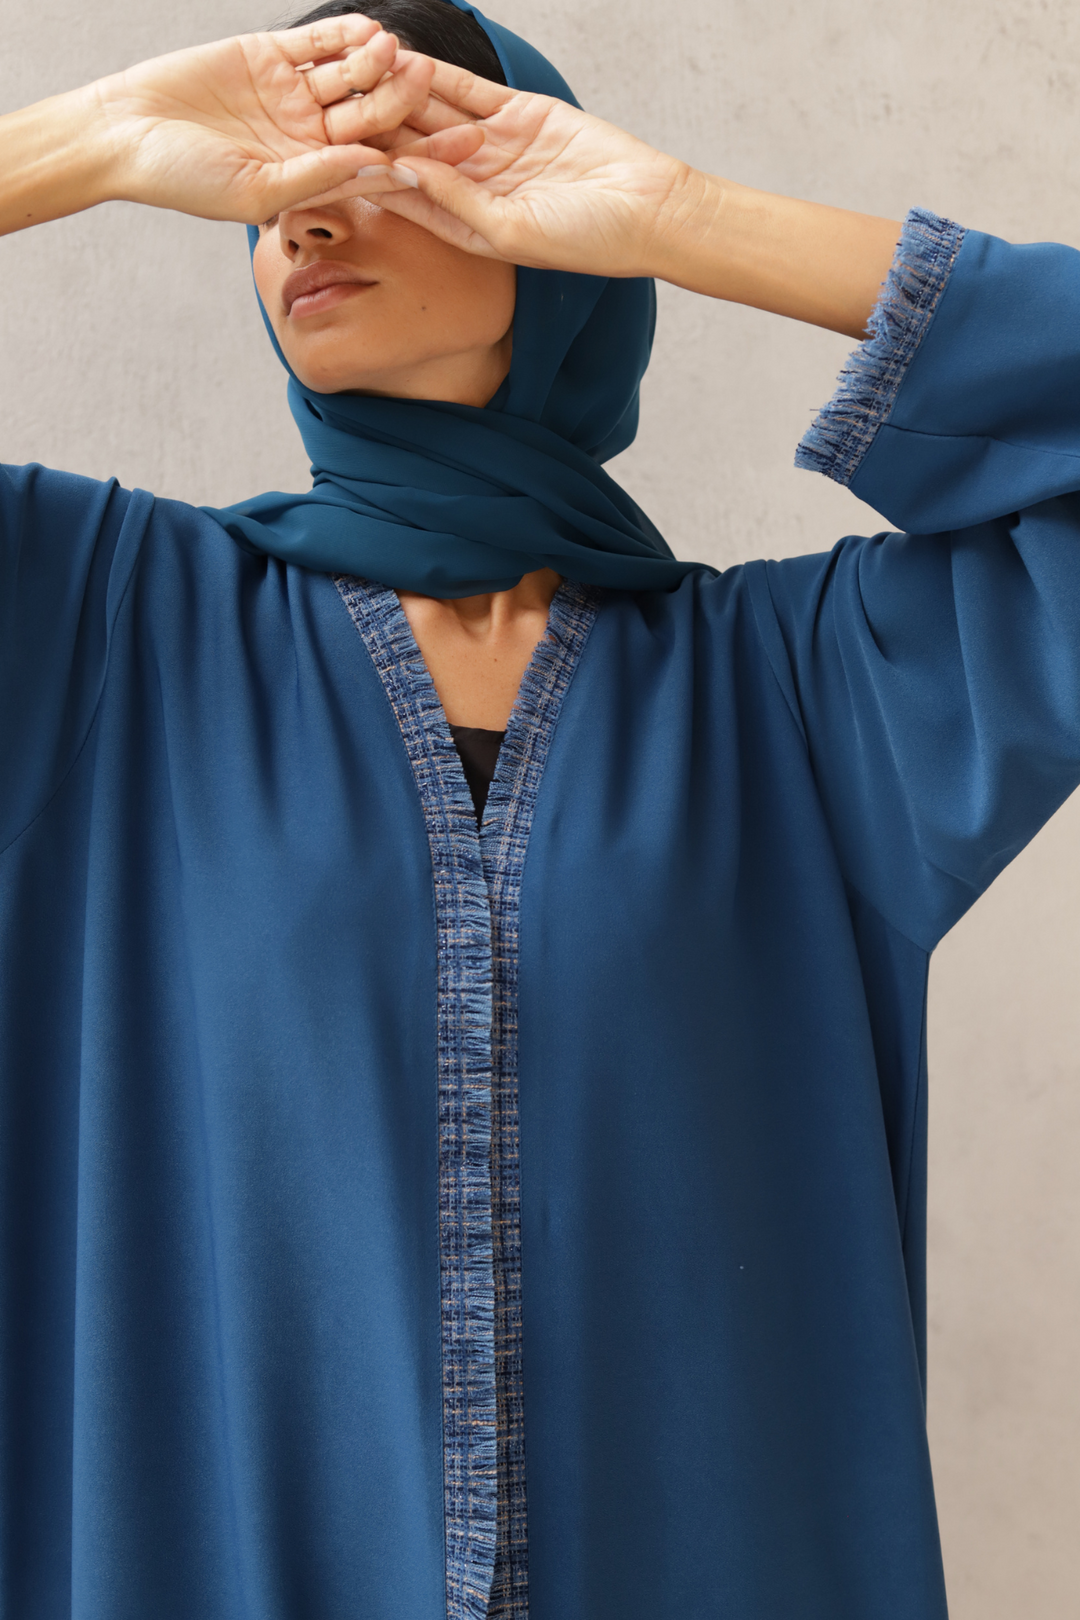 Basic Tweed (Blue Abaya)